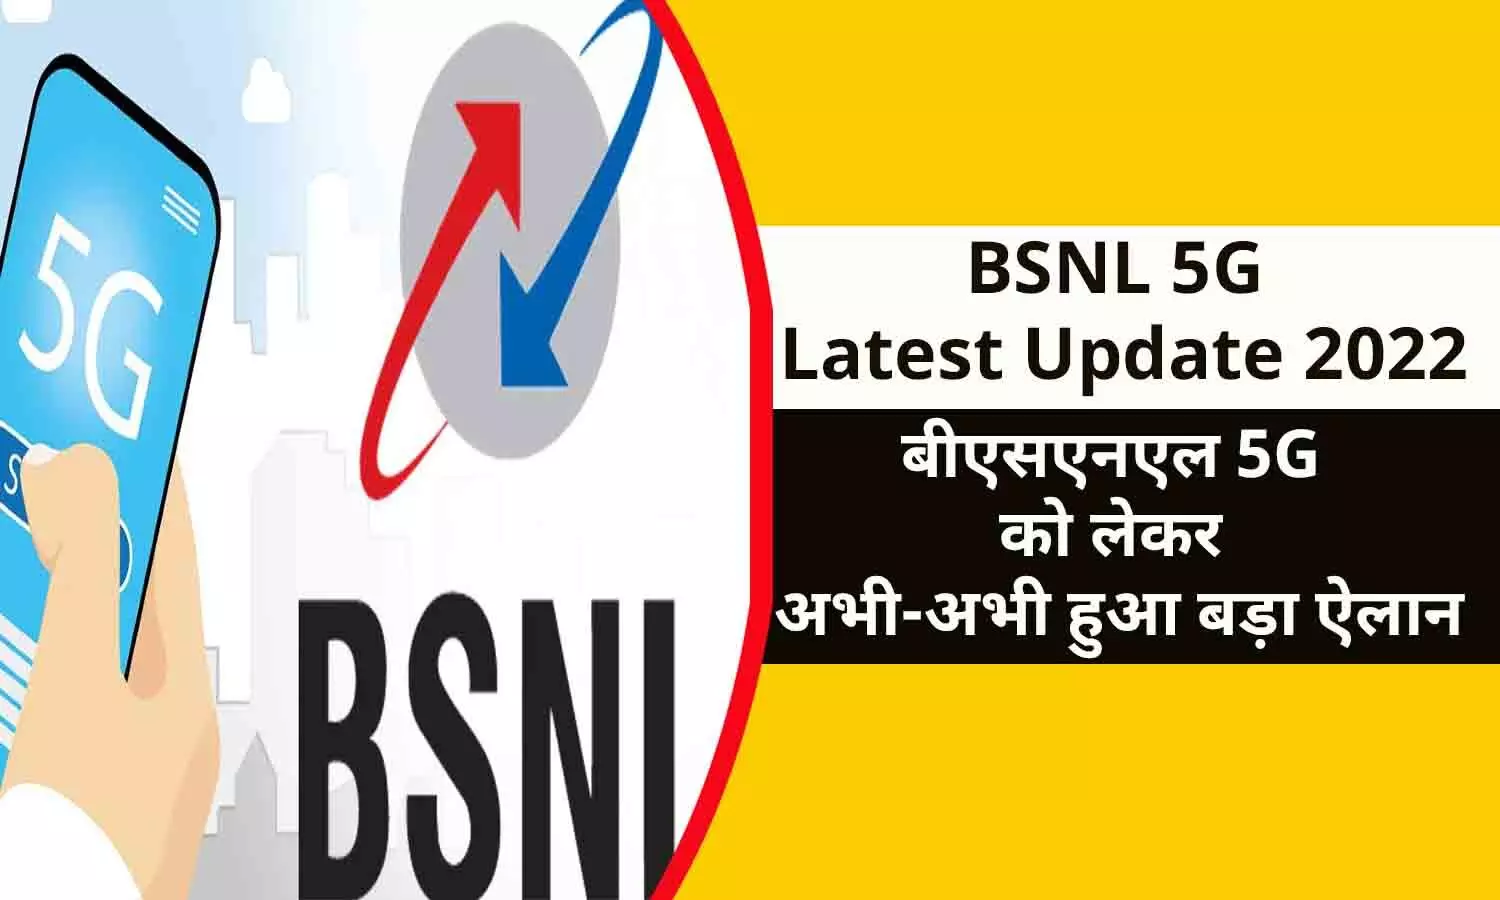 BSNL 5G Latest Update 2022